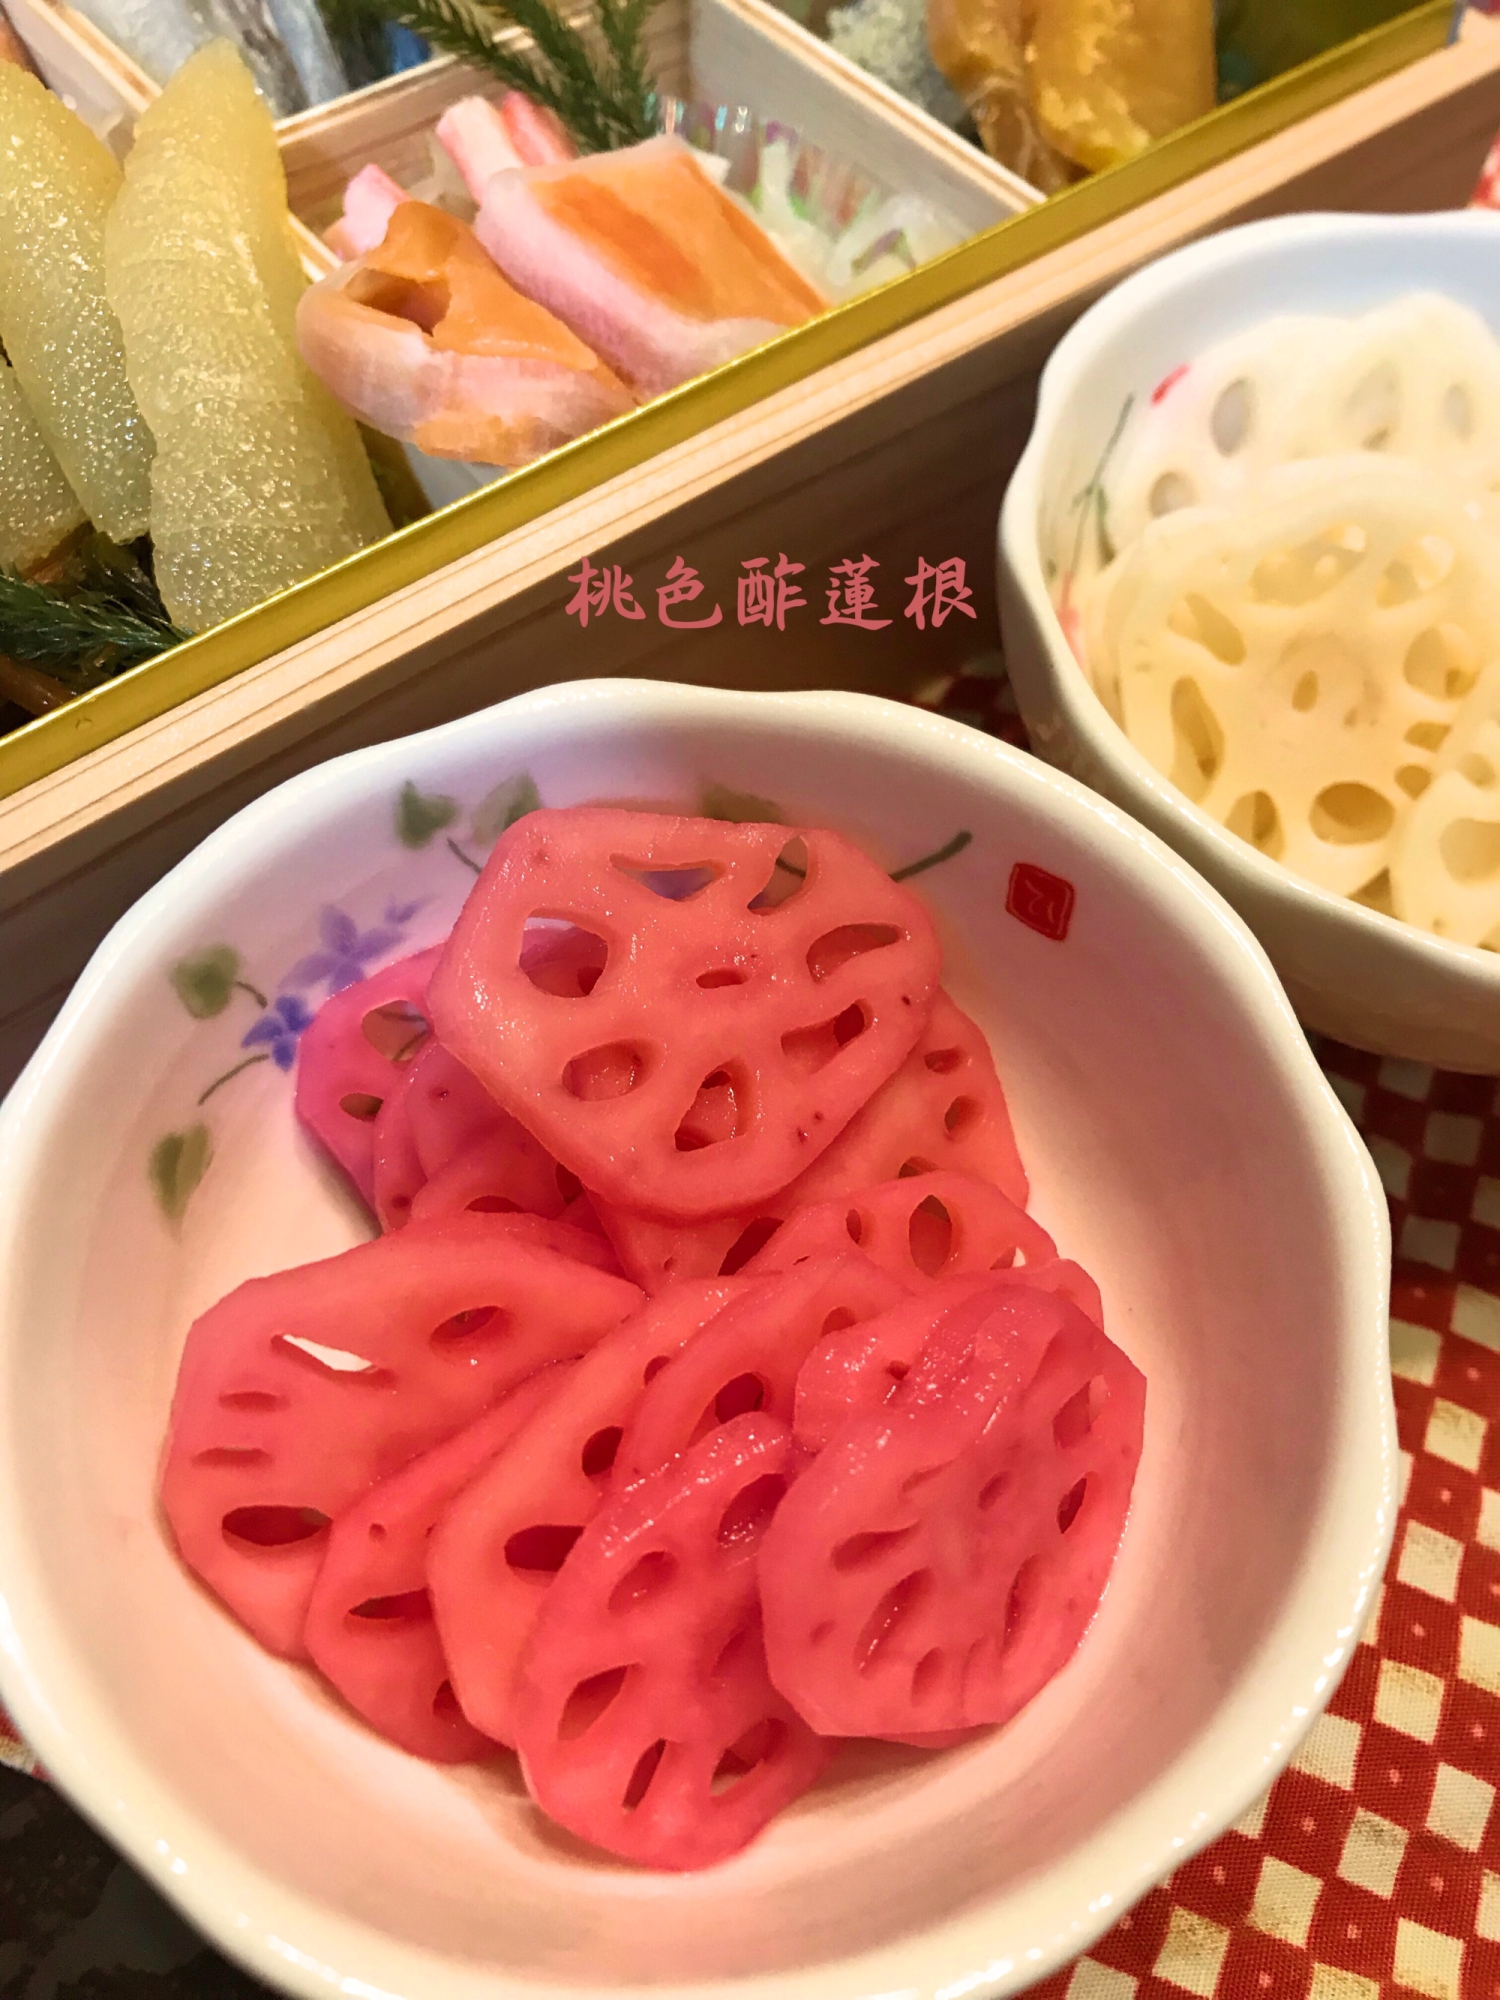 ☆★ピンクの酢蓮根♪ビーツ汁で★☆